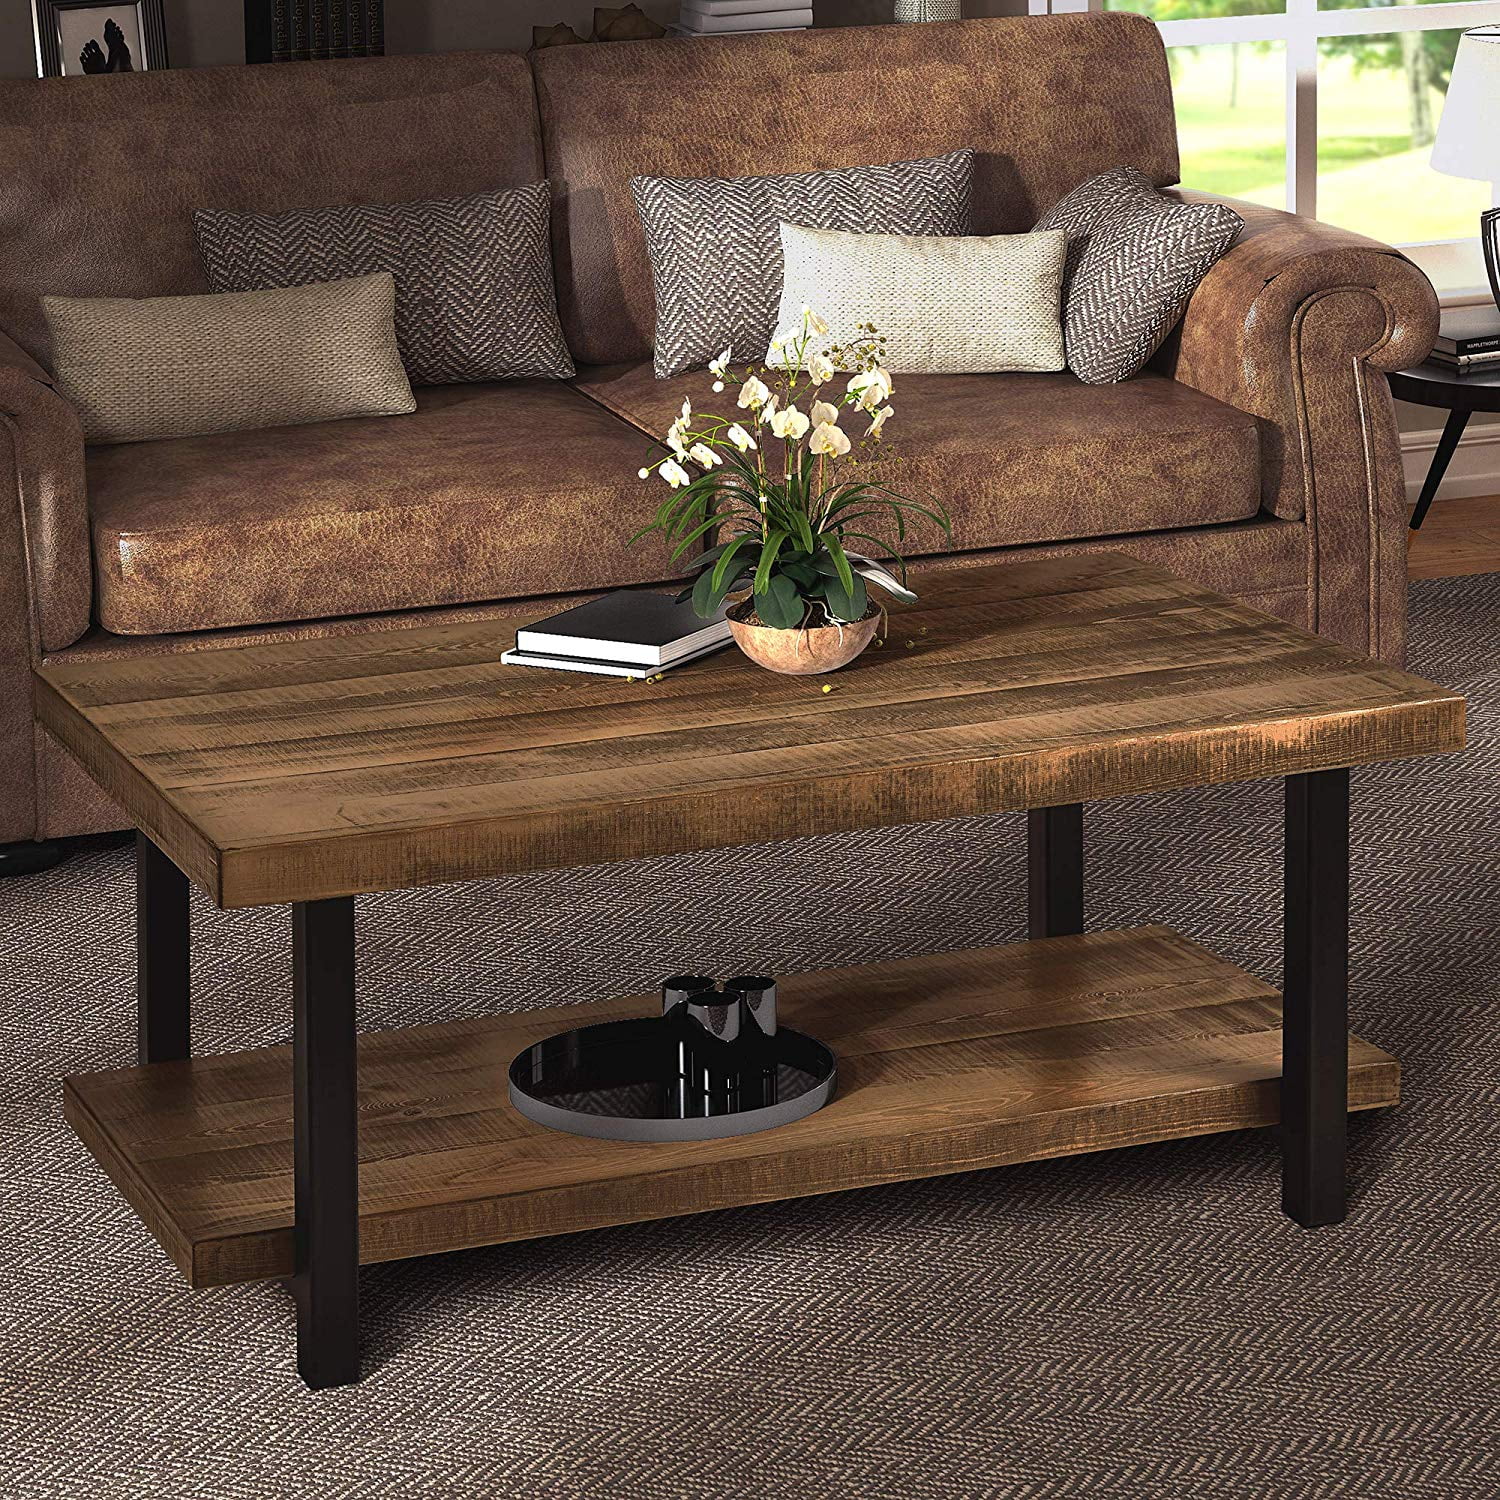 Wood Coffee Table Designs In Kenya - Cherry Wood Coffee Table Set ...